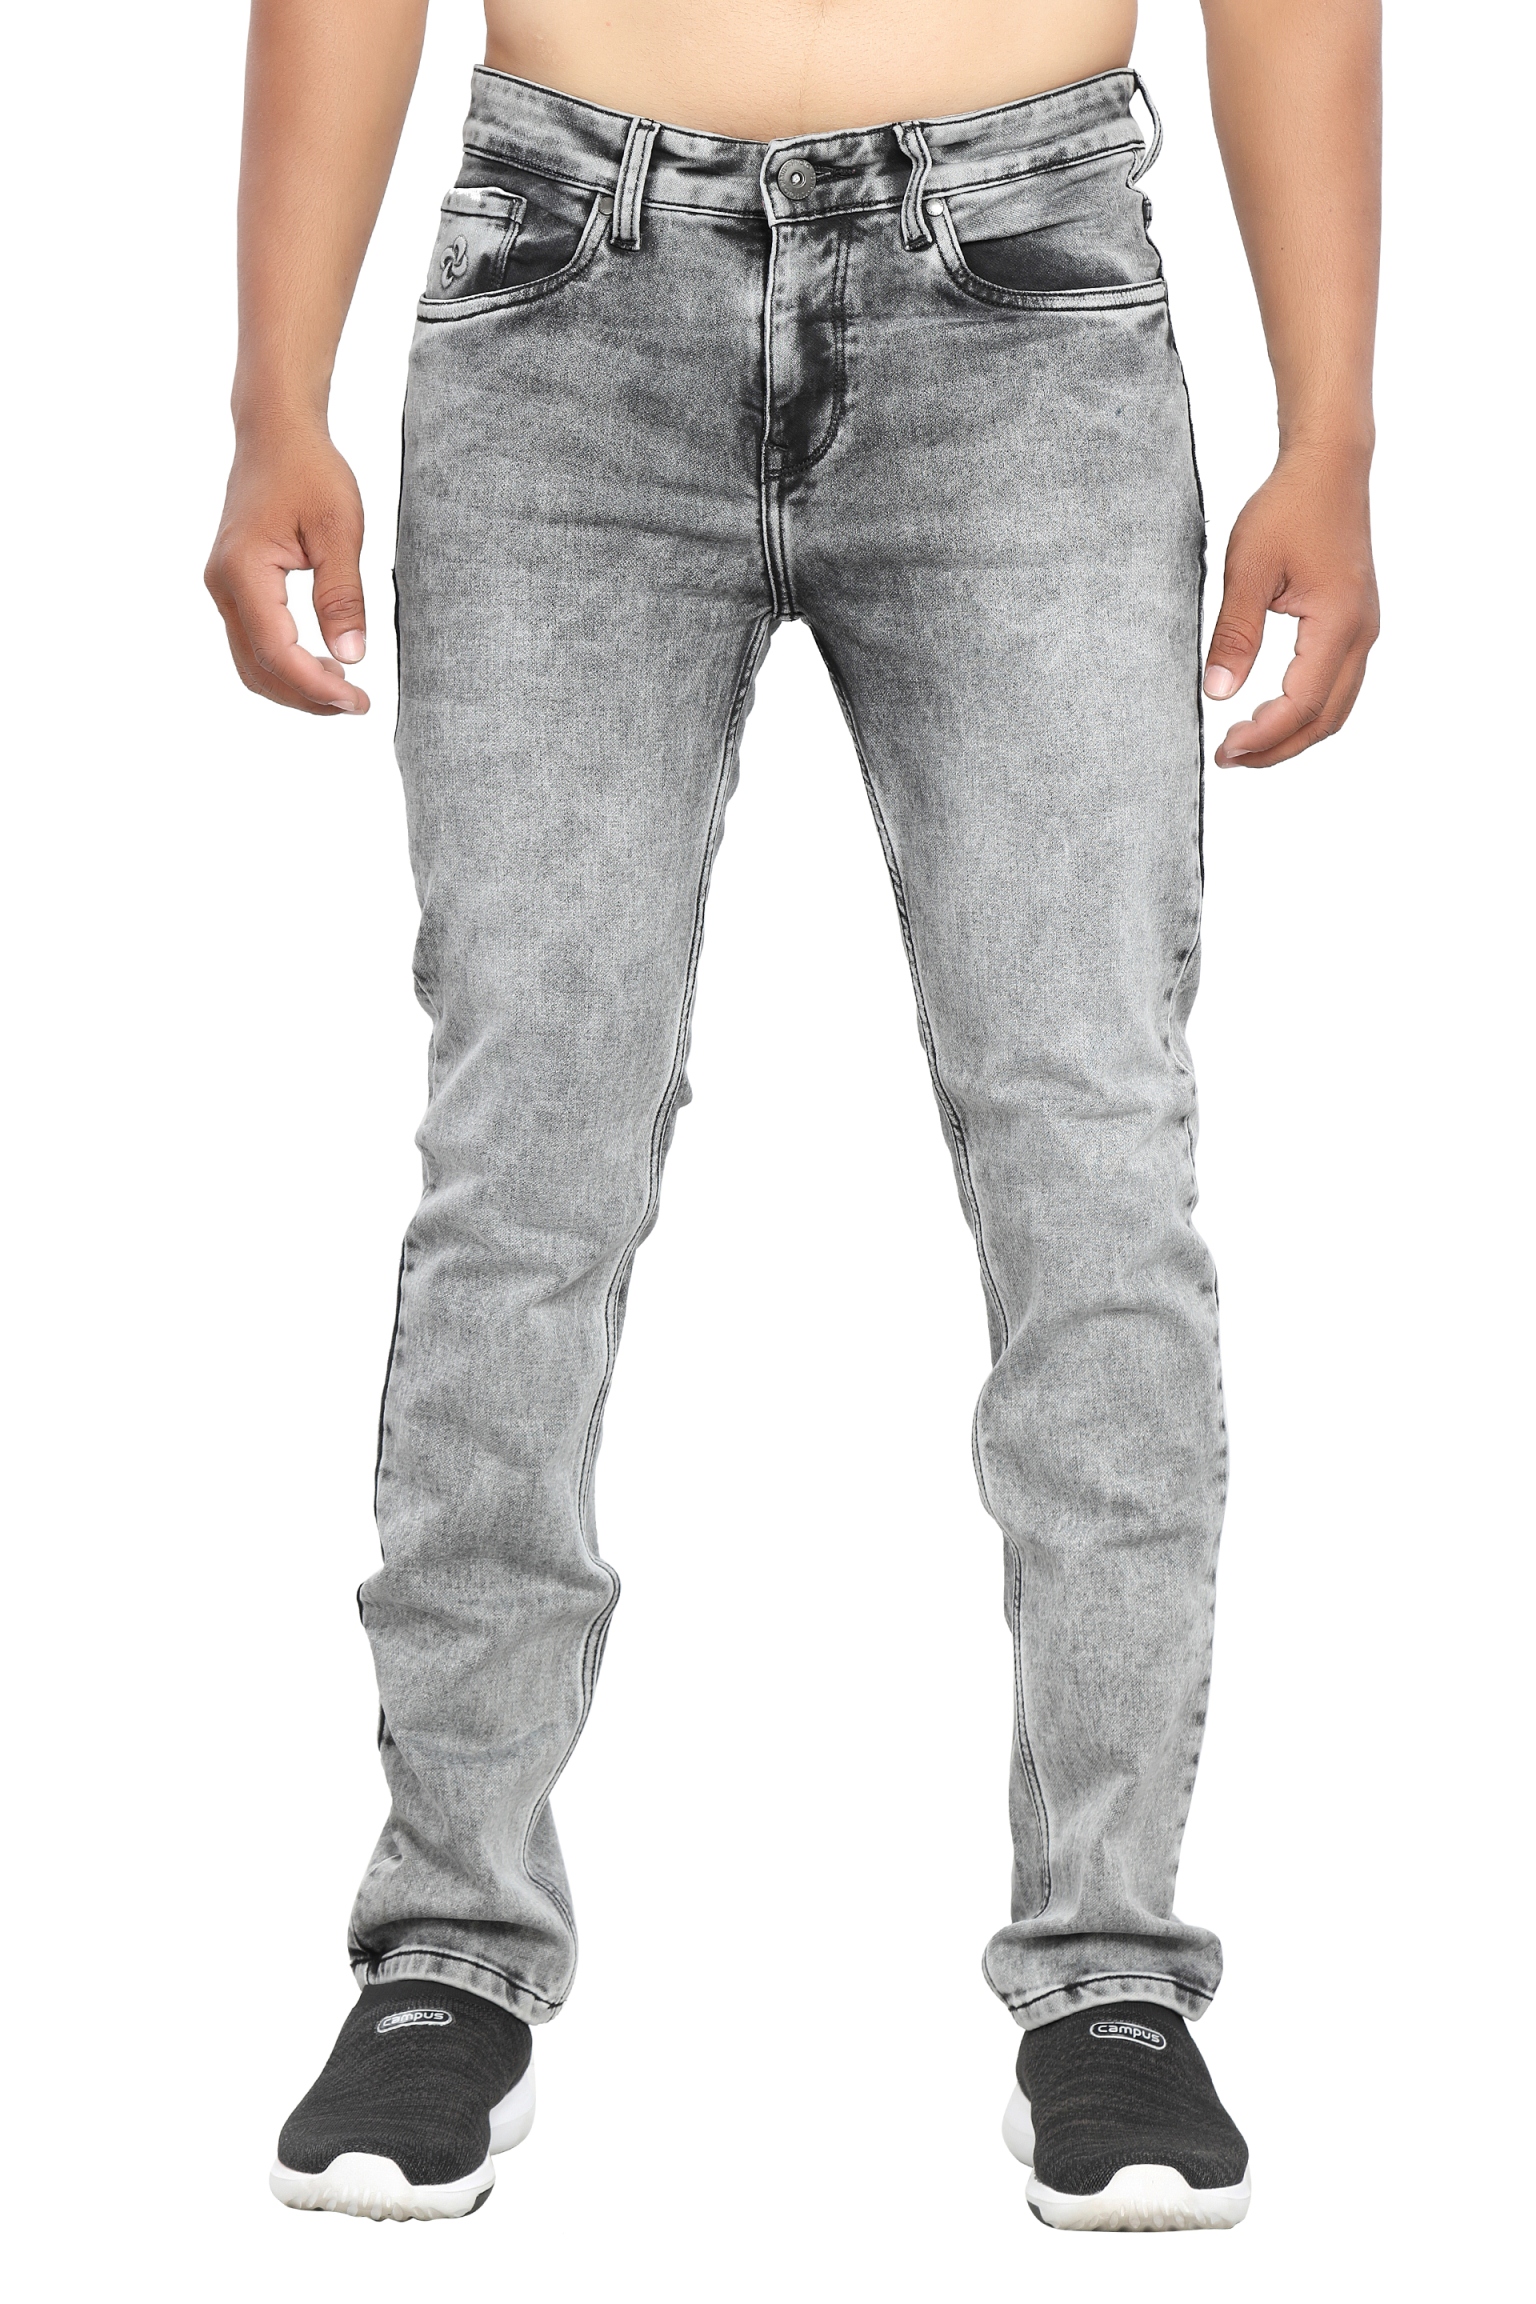 Estrolo Stretchable Slim Fit Branded Grey Jeans For Men